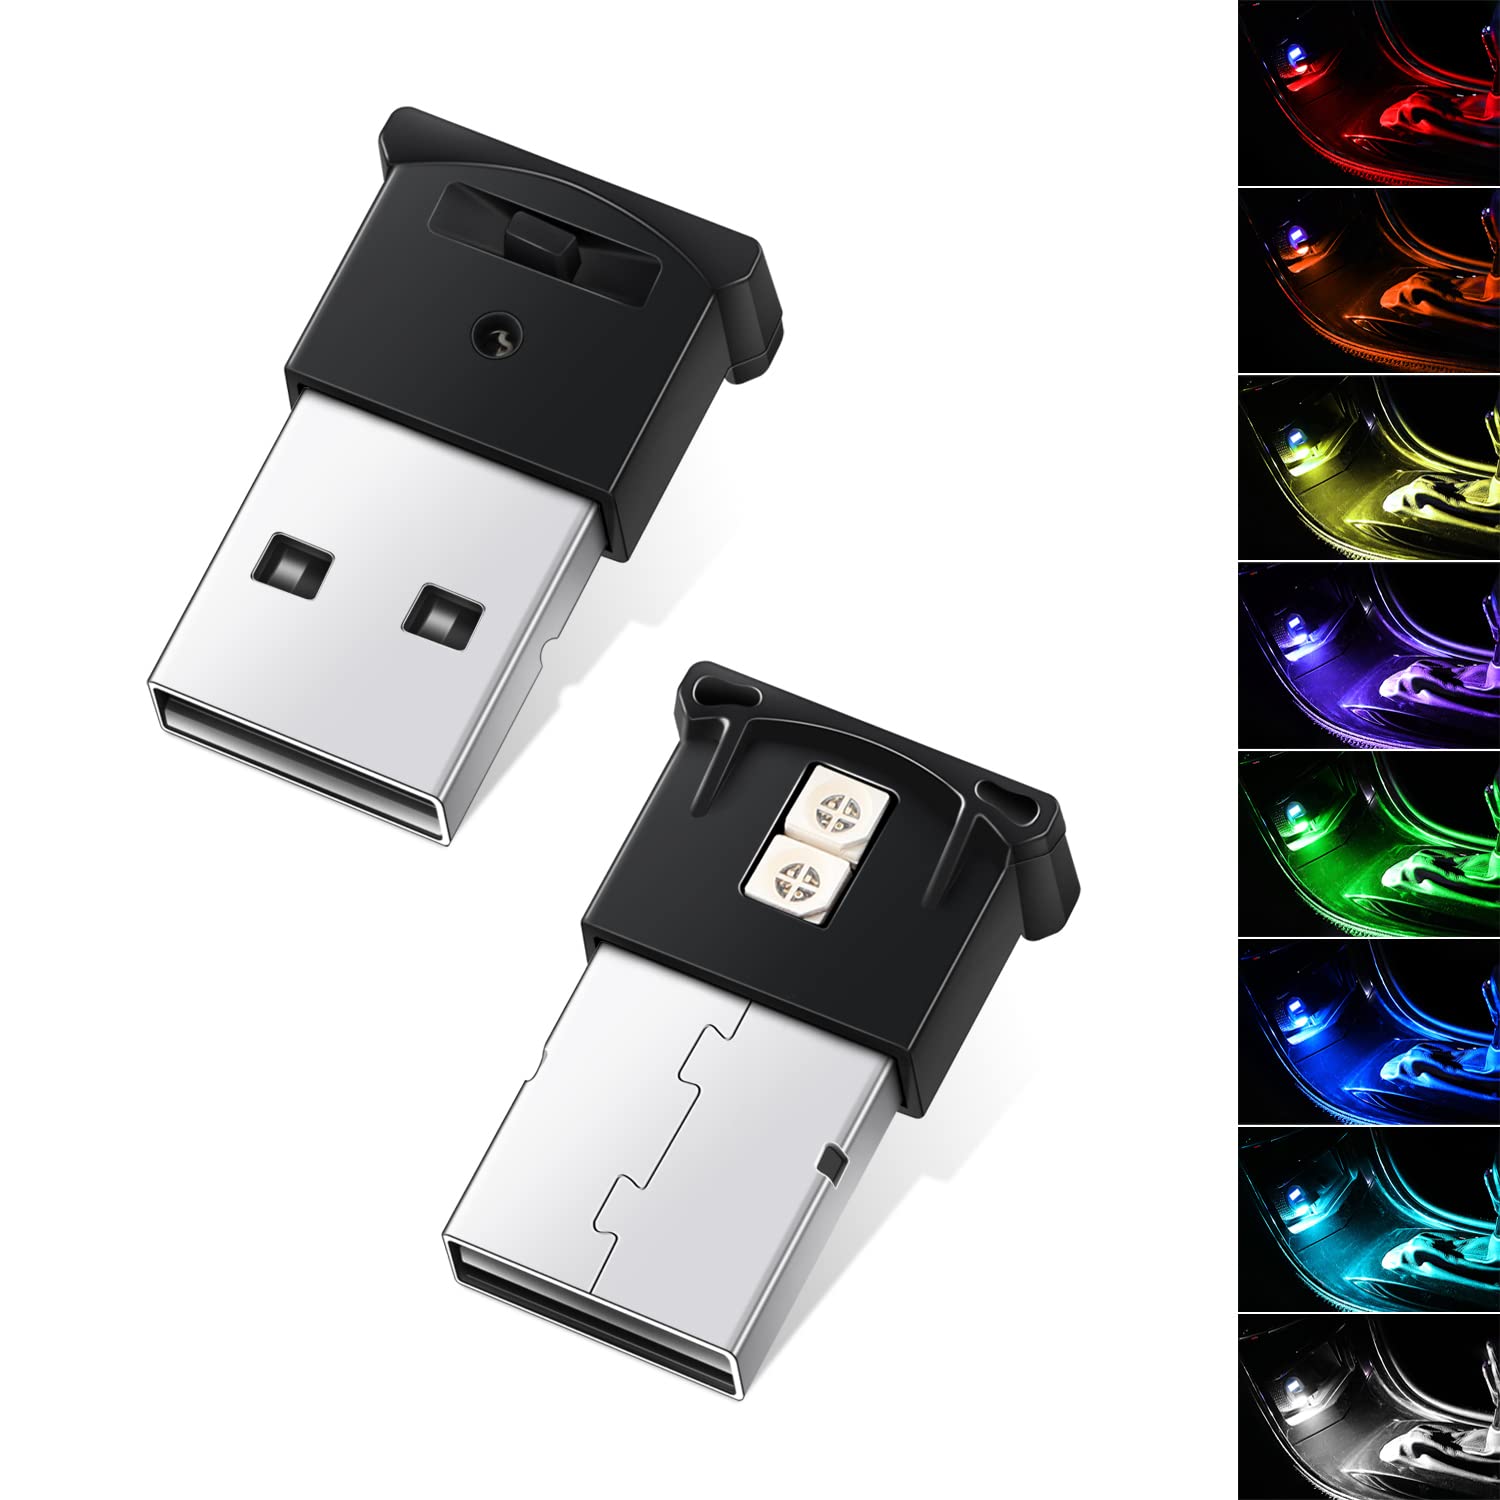 Mua Ouzorp 2 Pcs Mini USB LED Light, 8 Colors RGB Car Interior ...